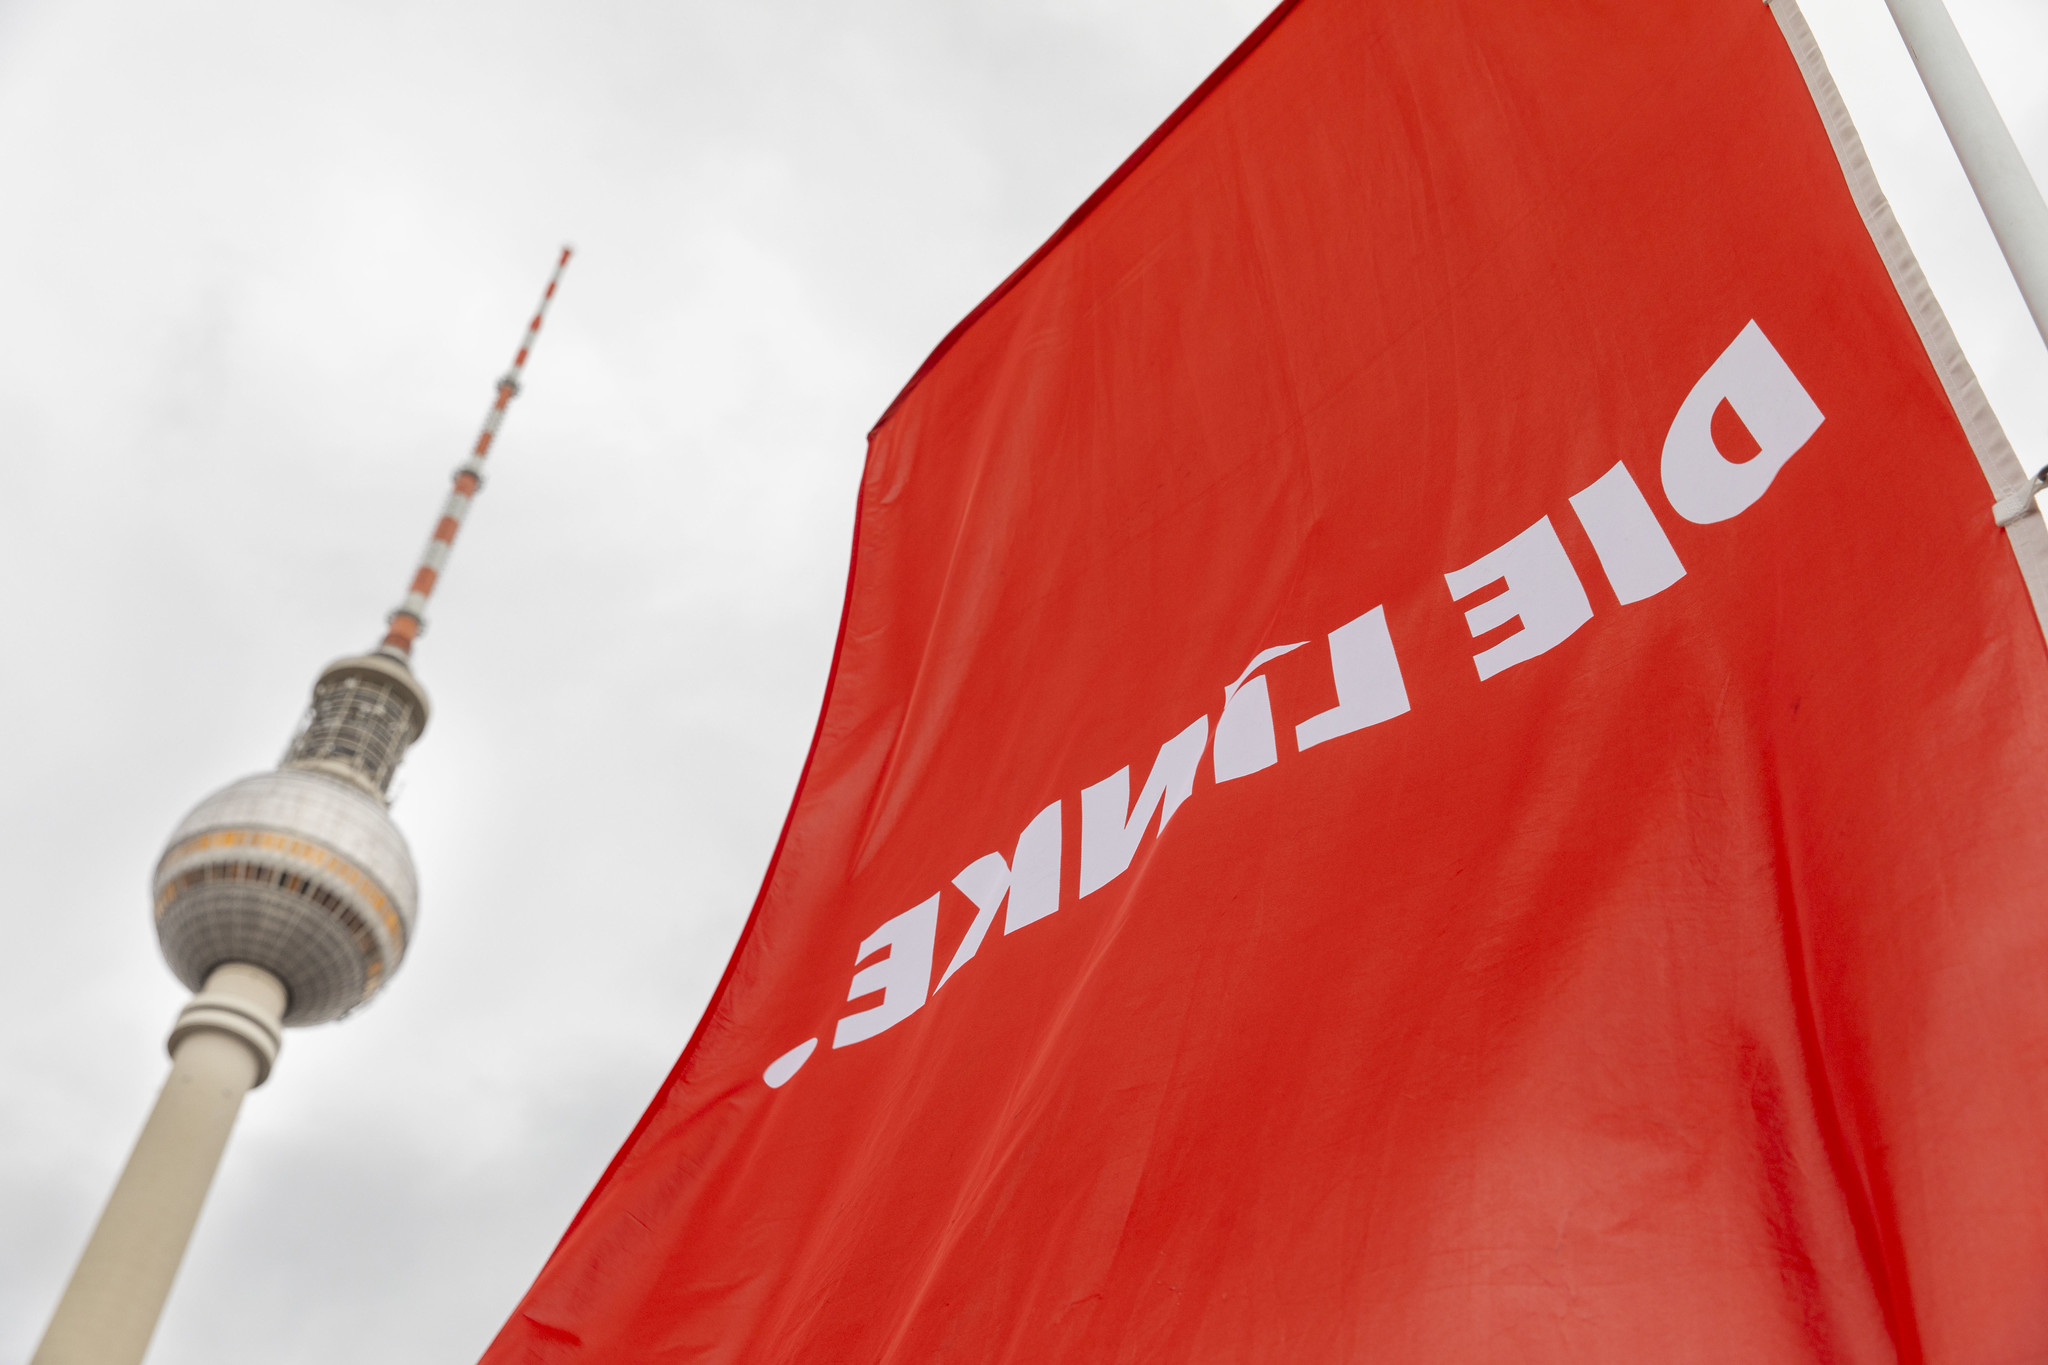 Parteitag der LINKEN in Berlin: Opposition gegen Rot-Grün-Rot formiert sich